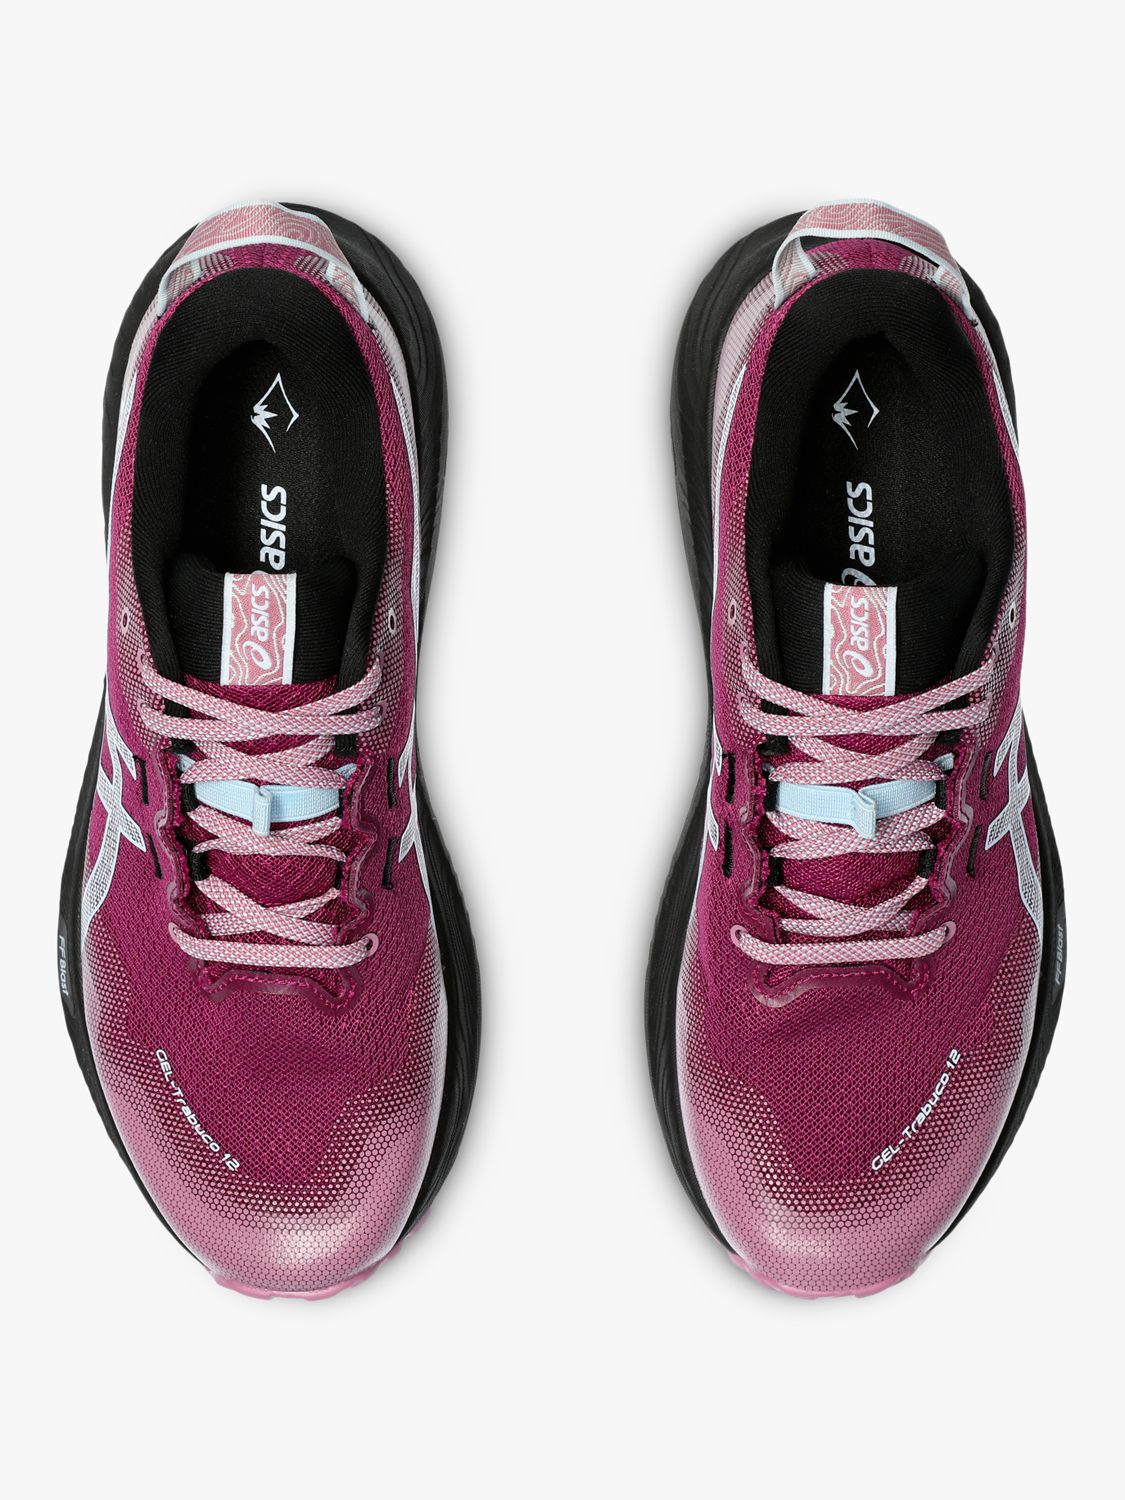 Buy ASICS GEL-TRABUCO 12 Women's Running Shoes, Blackberry/Blue Online at johnlewis.com